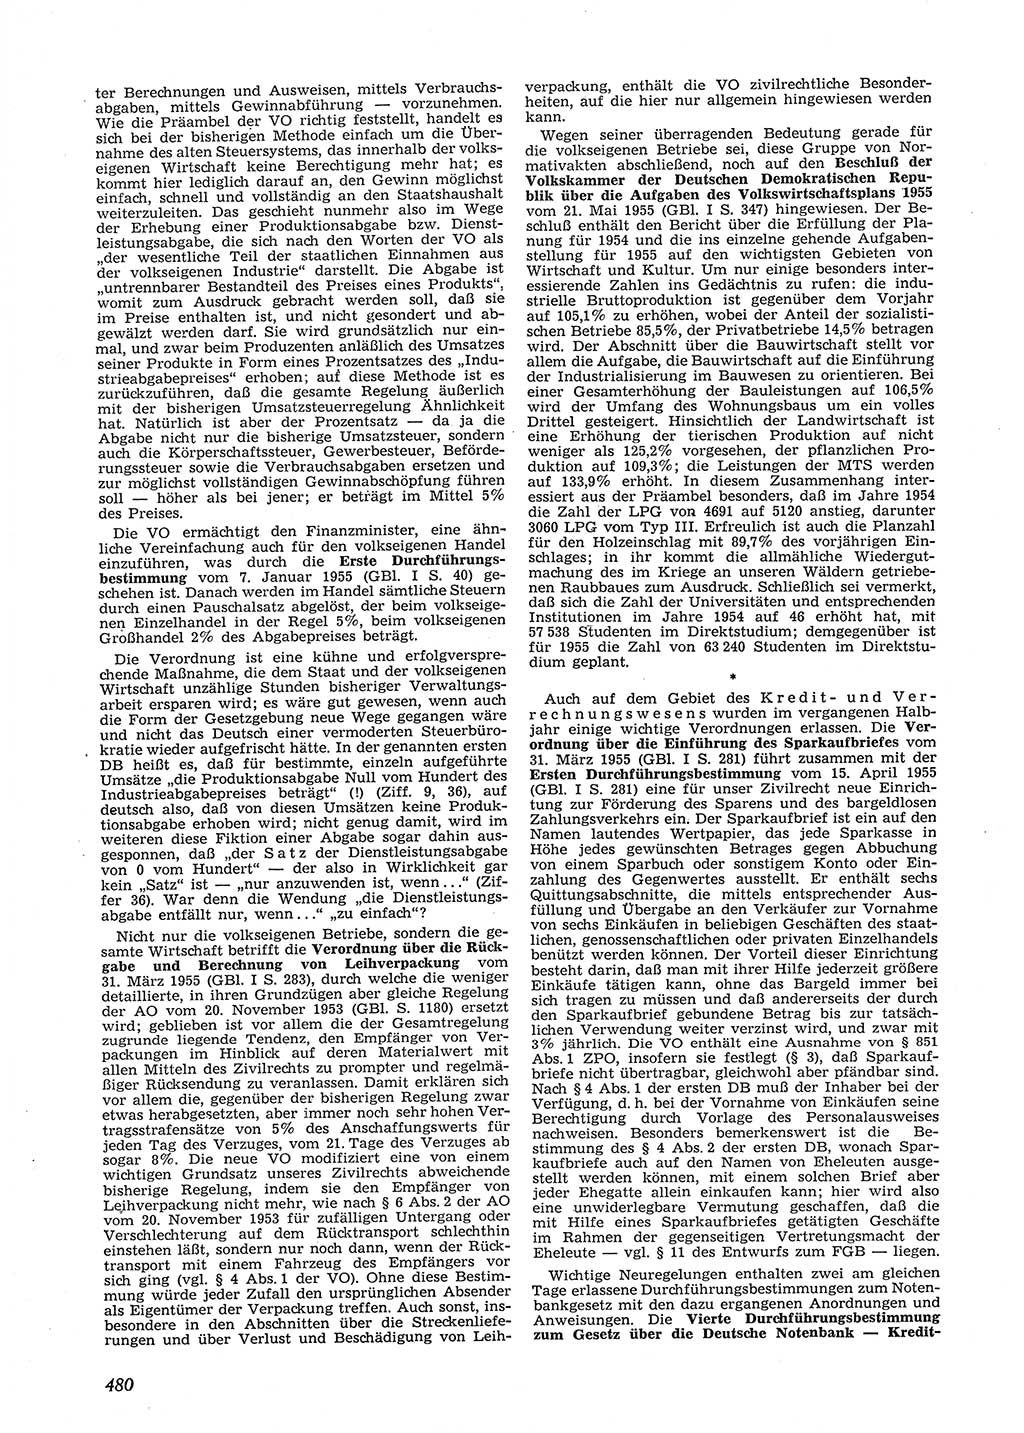 Neue Justiz (NJ), Zeitschrift für Recht und Rechtswissenschaft [Deutsche Demokratische Republik (DDR)], 9. Jahrgang 1955, Seite 480 (NJ DDR 1955, S. 480)